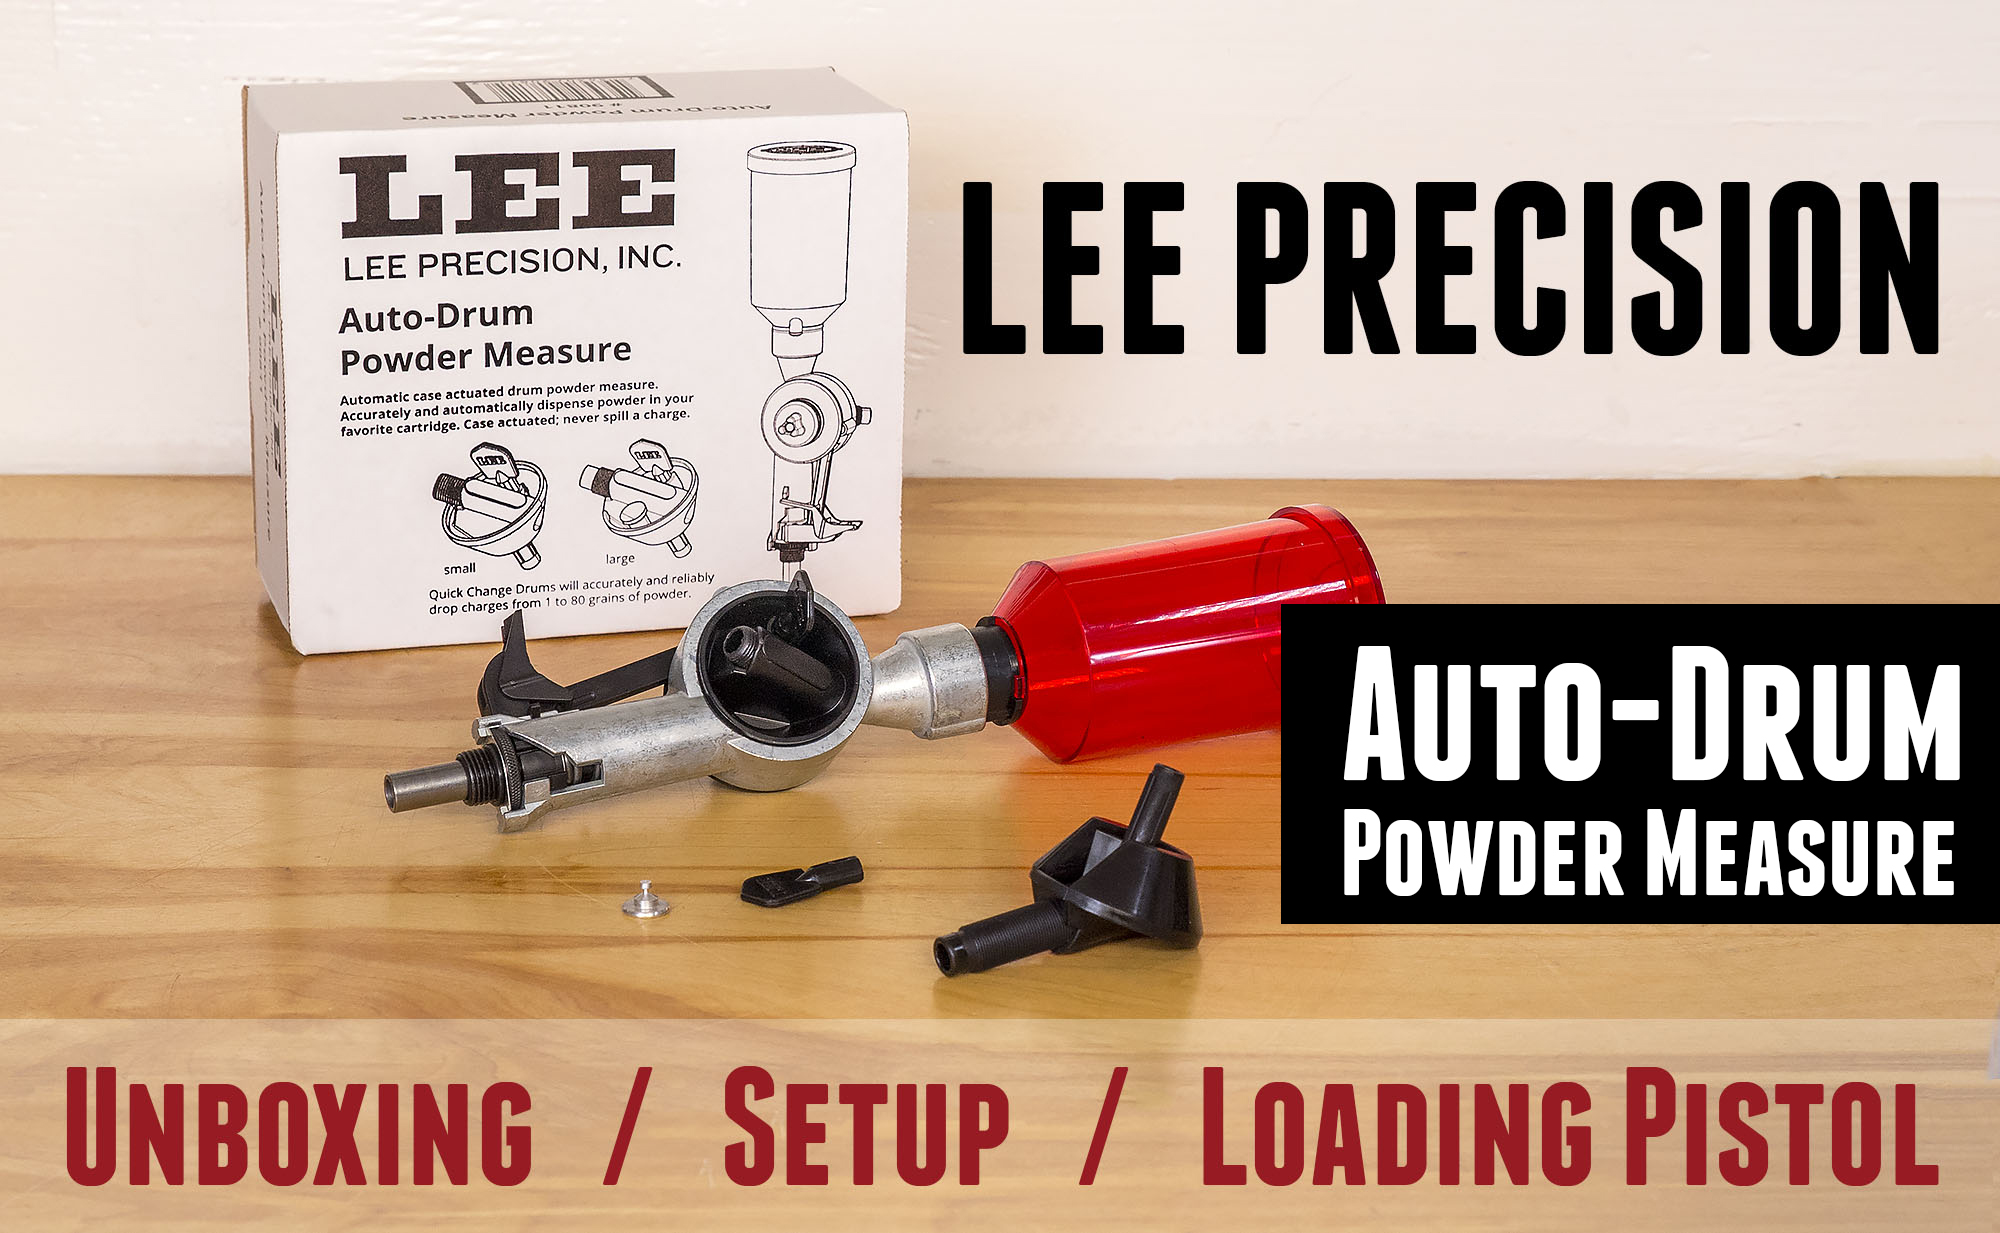 Lee Precision's NEW AUTO-DRUM POWDER MEASURE # 90811 Brand New!